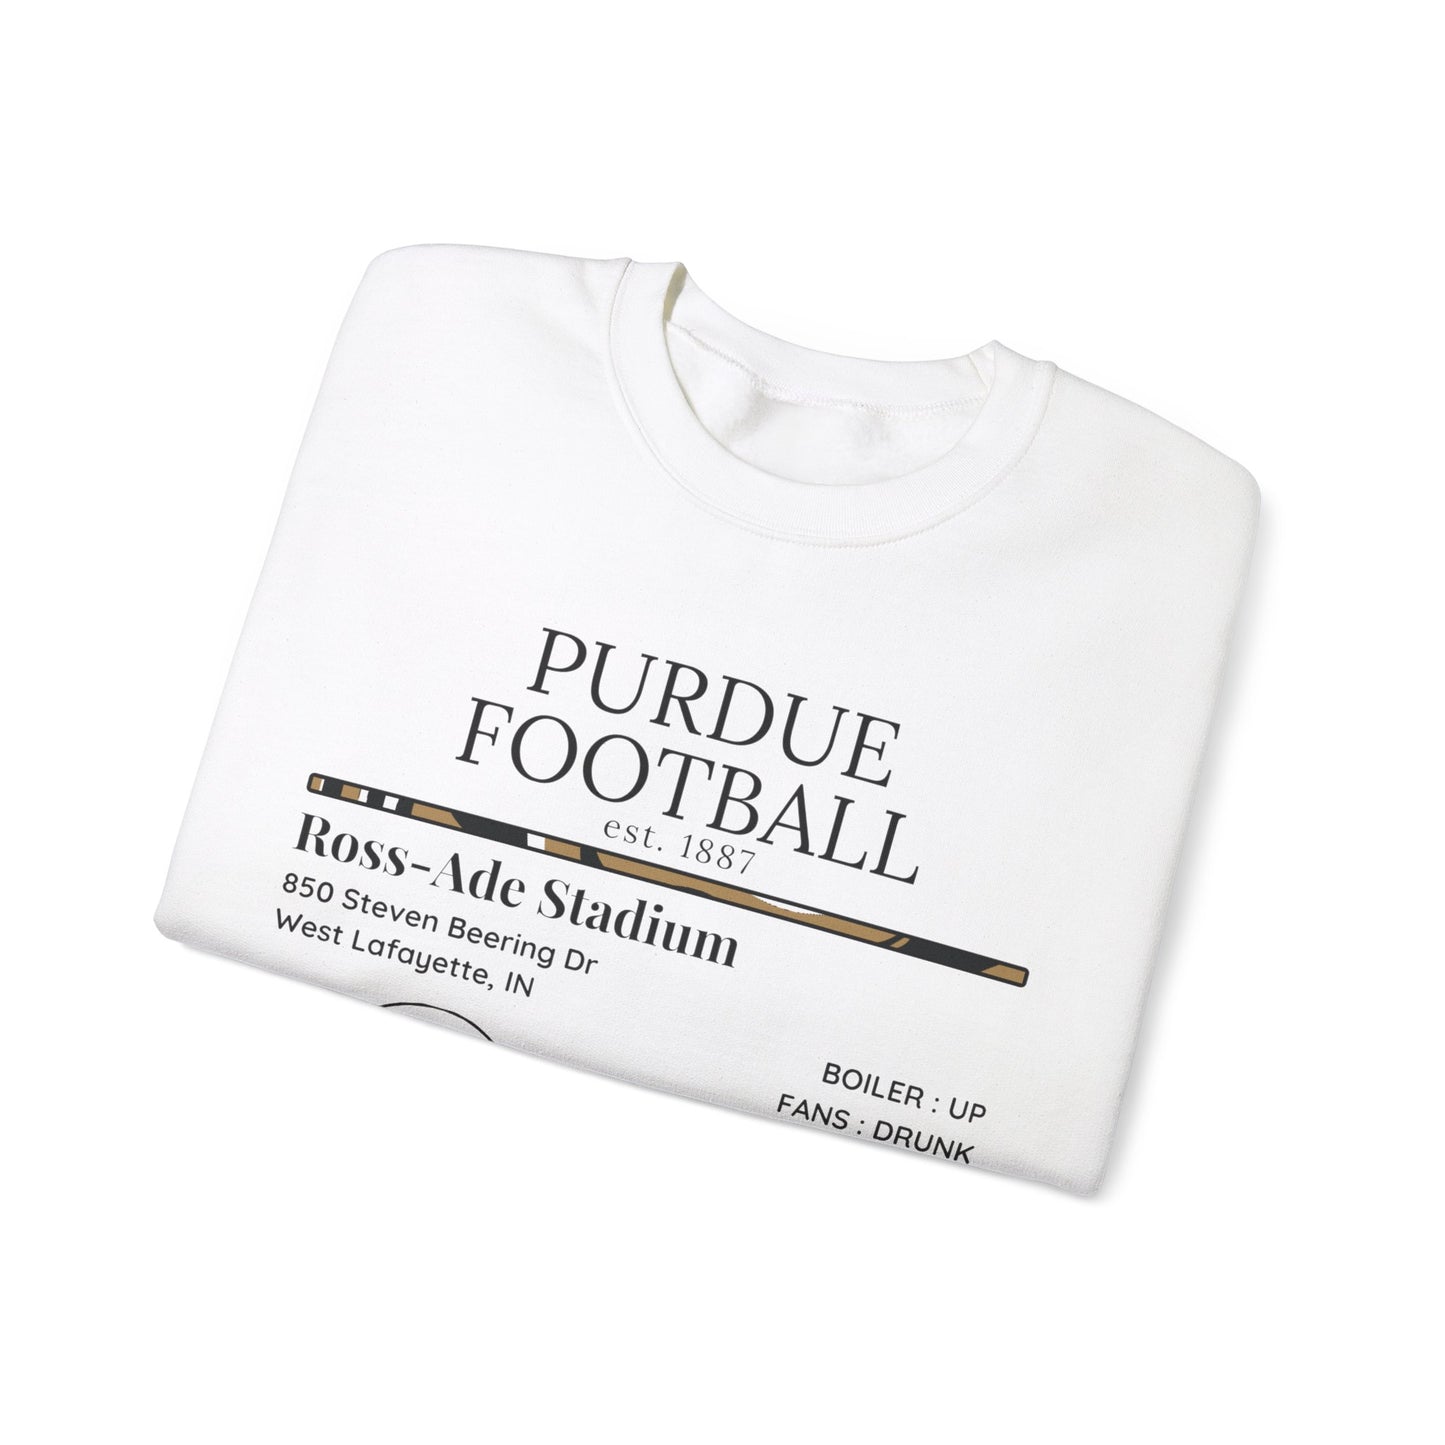 Purdue Football Sweatshirt